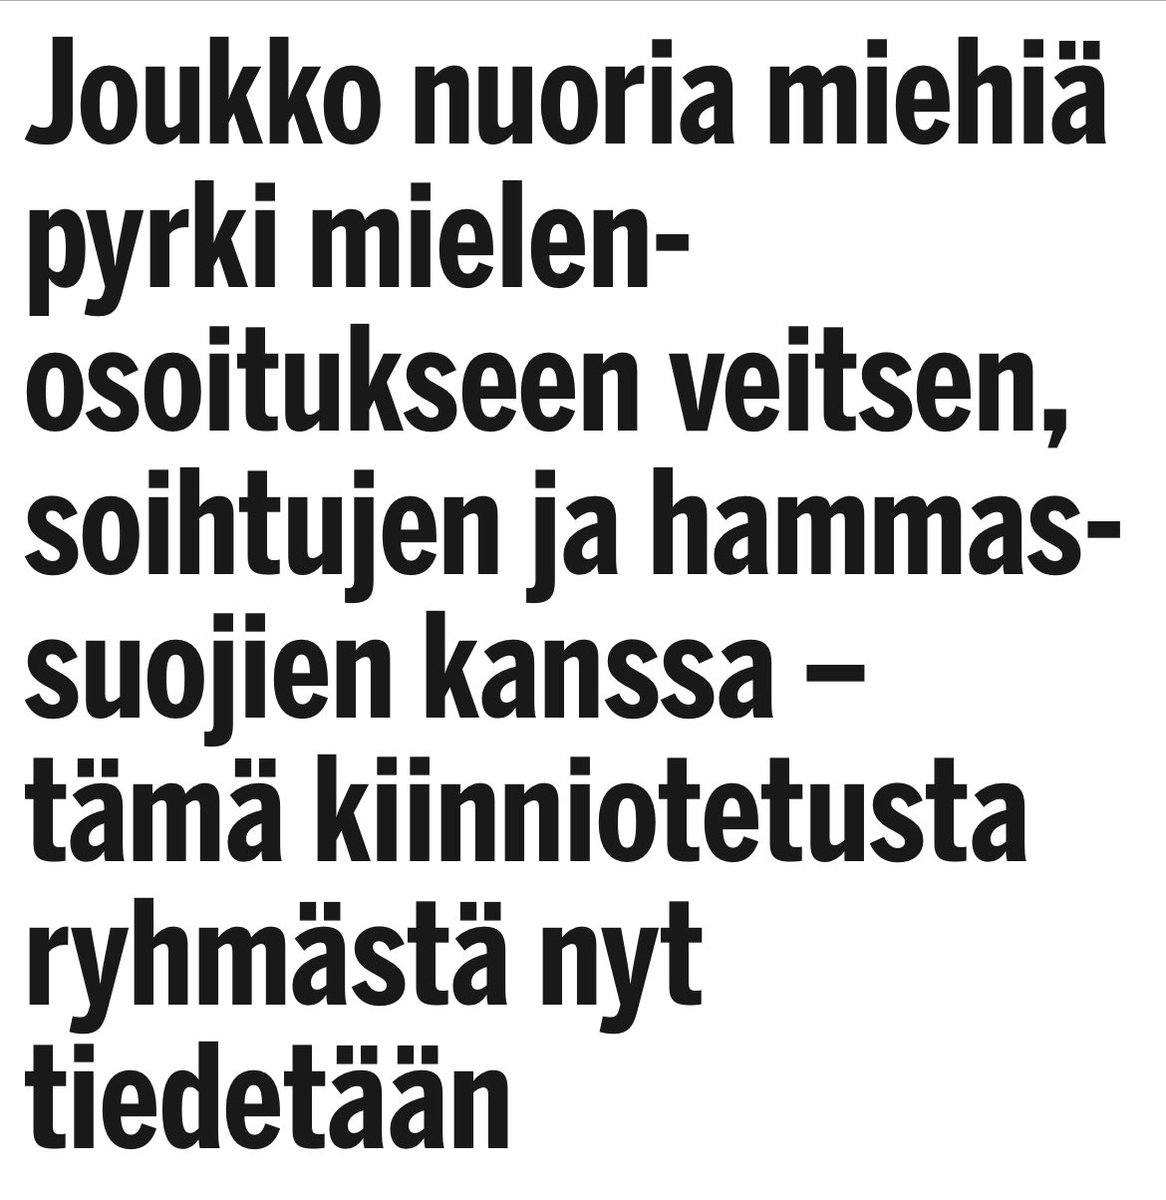 Perinteinen suomalainen itsenäisyyspäivä perinne: laitetaan svedut koppiin. Näillä äärioikeistolaisilla ei oikein mene hyvin tämä Suomen matkailu